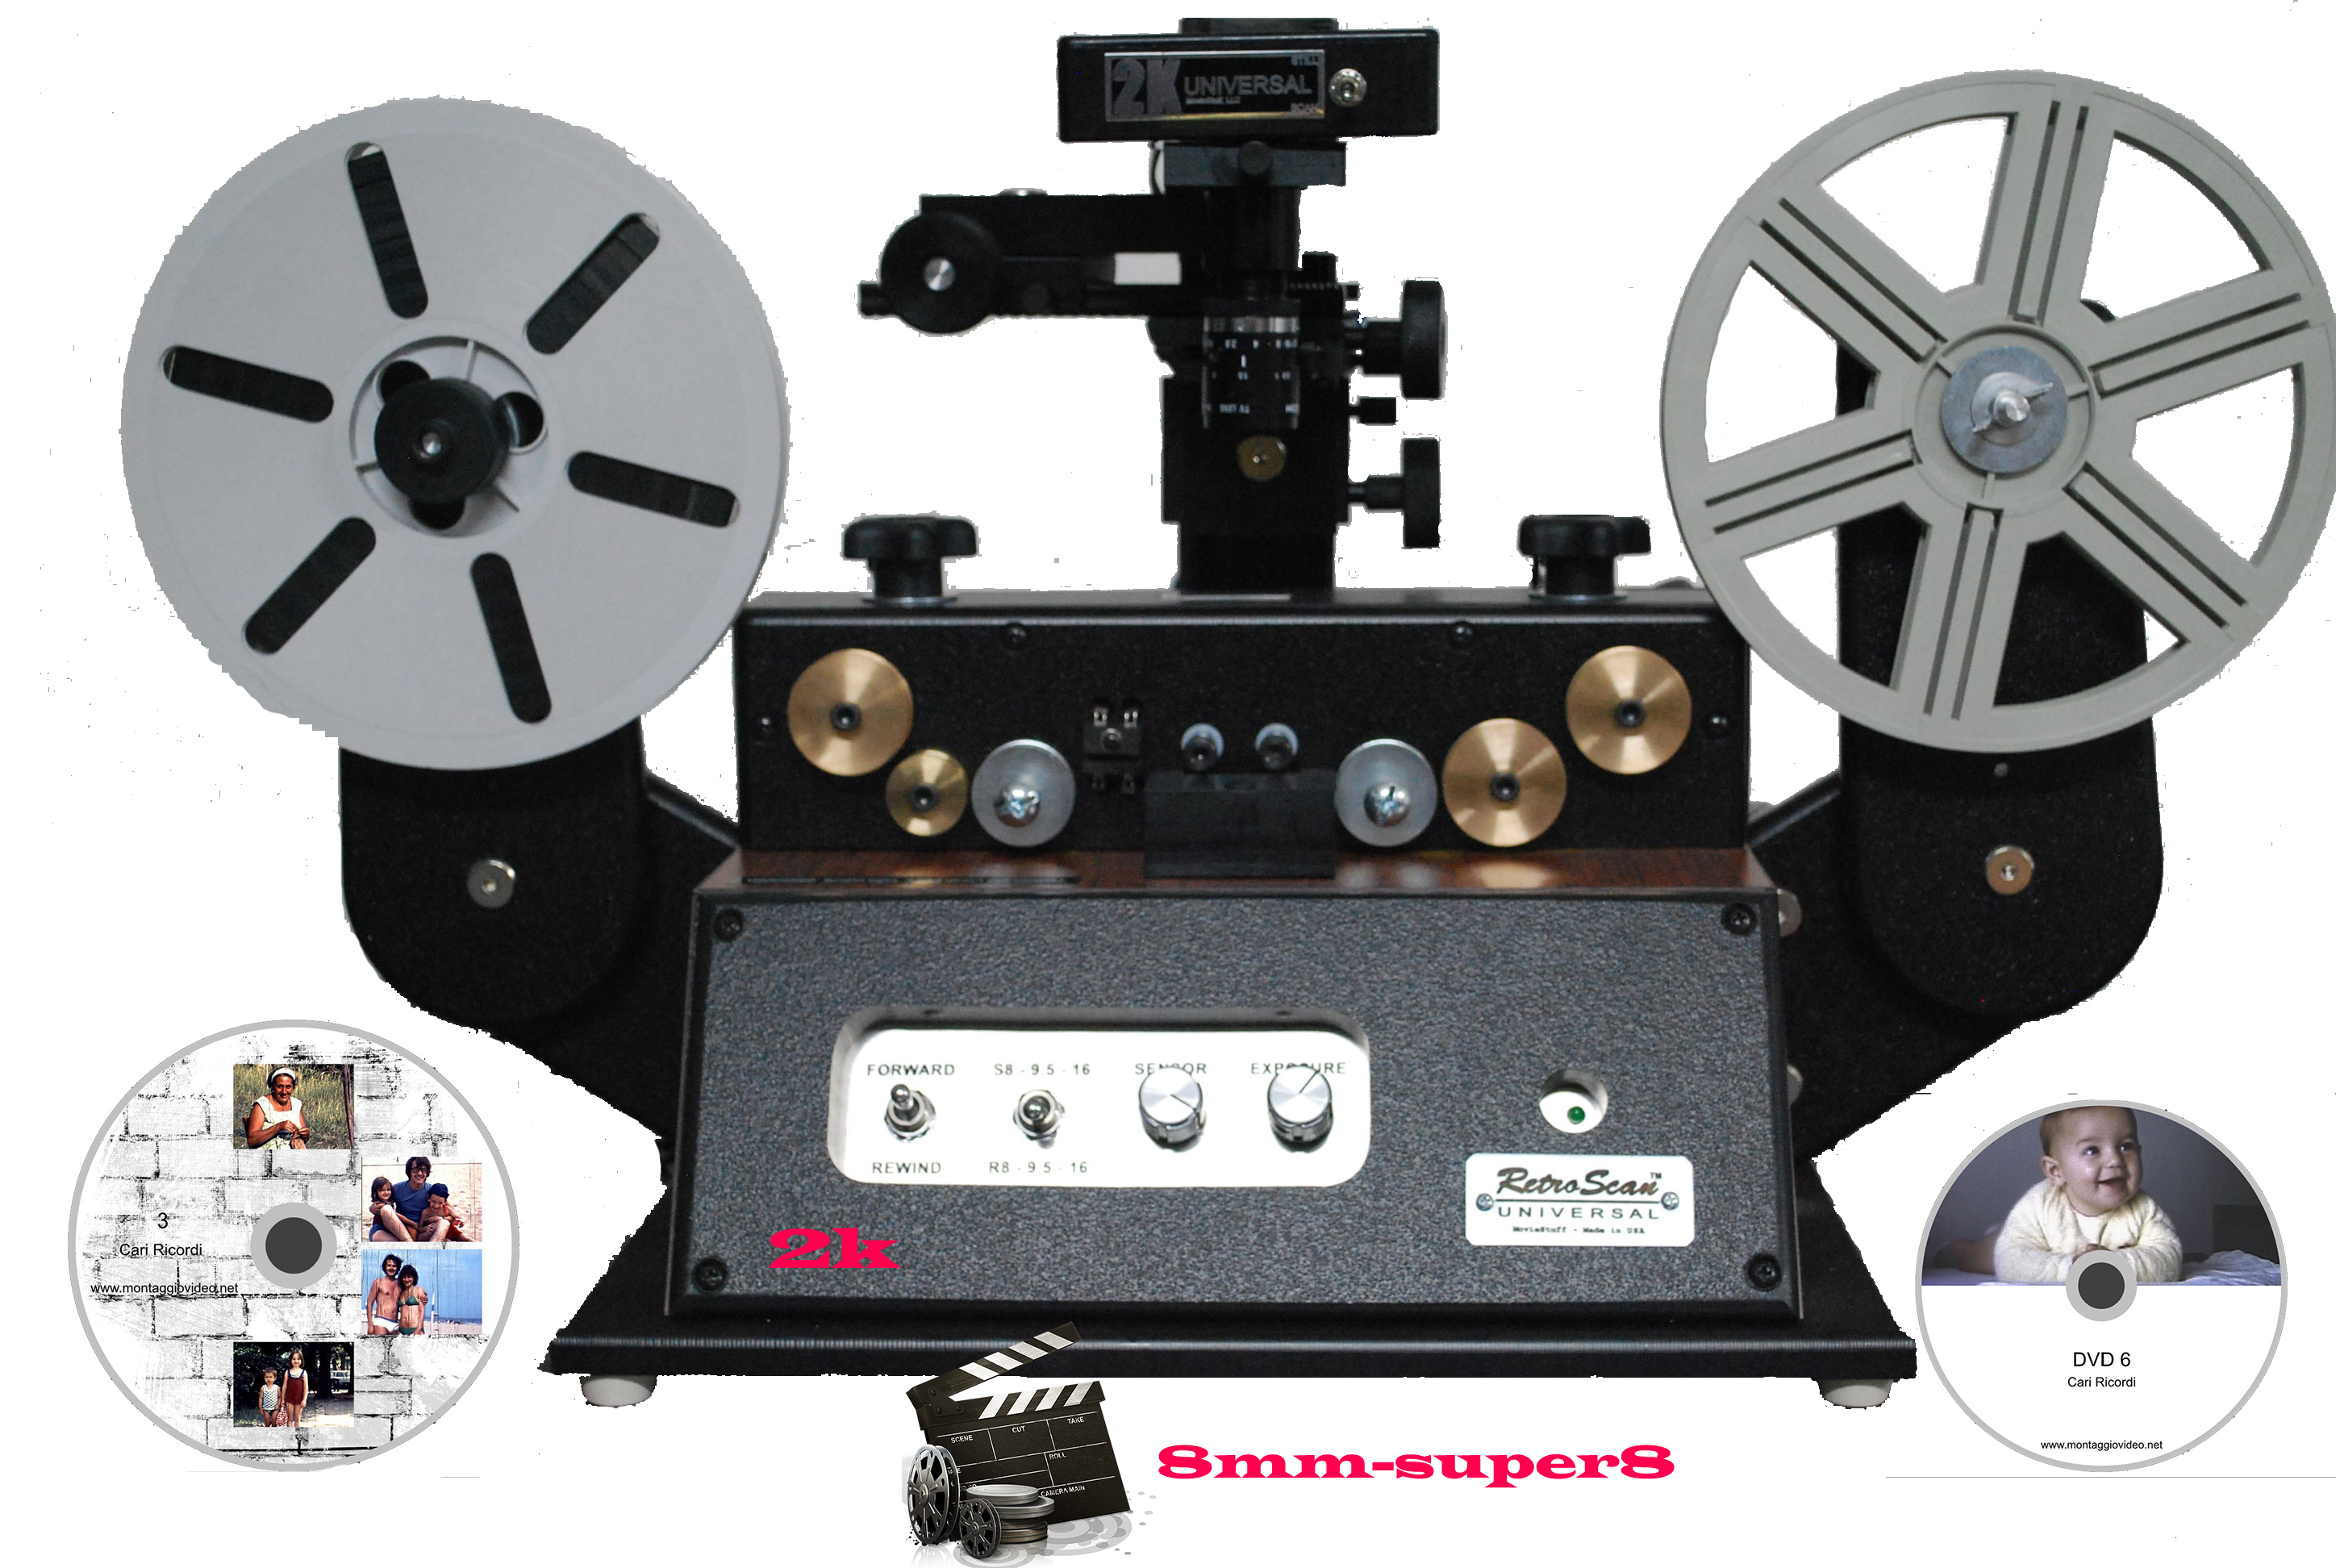 Riversamento video, pellicole “super8 8mm 16 mm” Scanner cinematografico foto